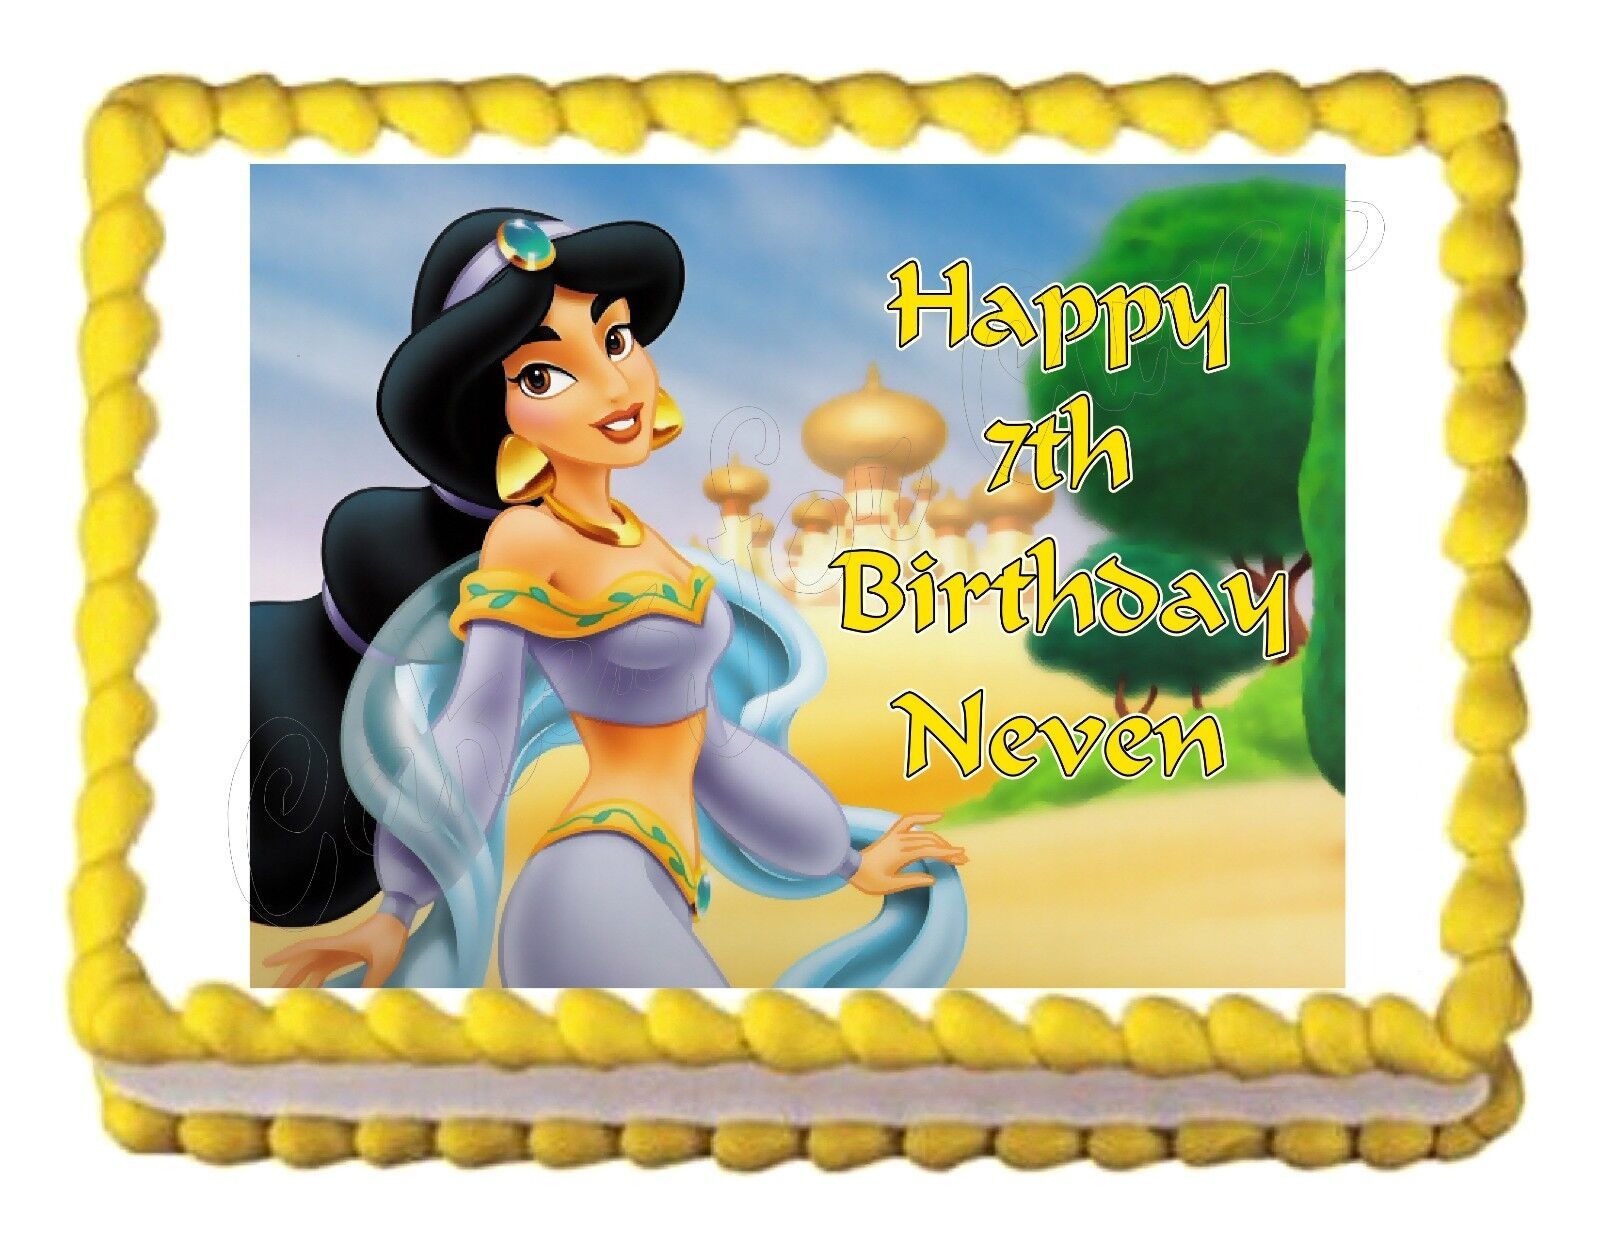 JASMINE (Aladdin) edible cake image birthday cake decoration image frosting - $9.99